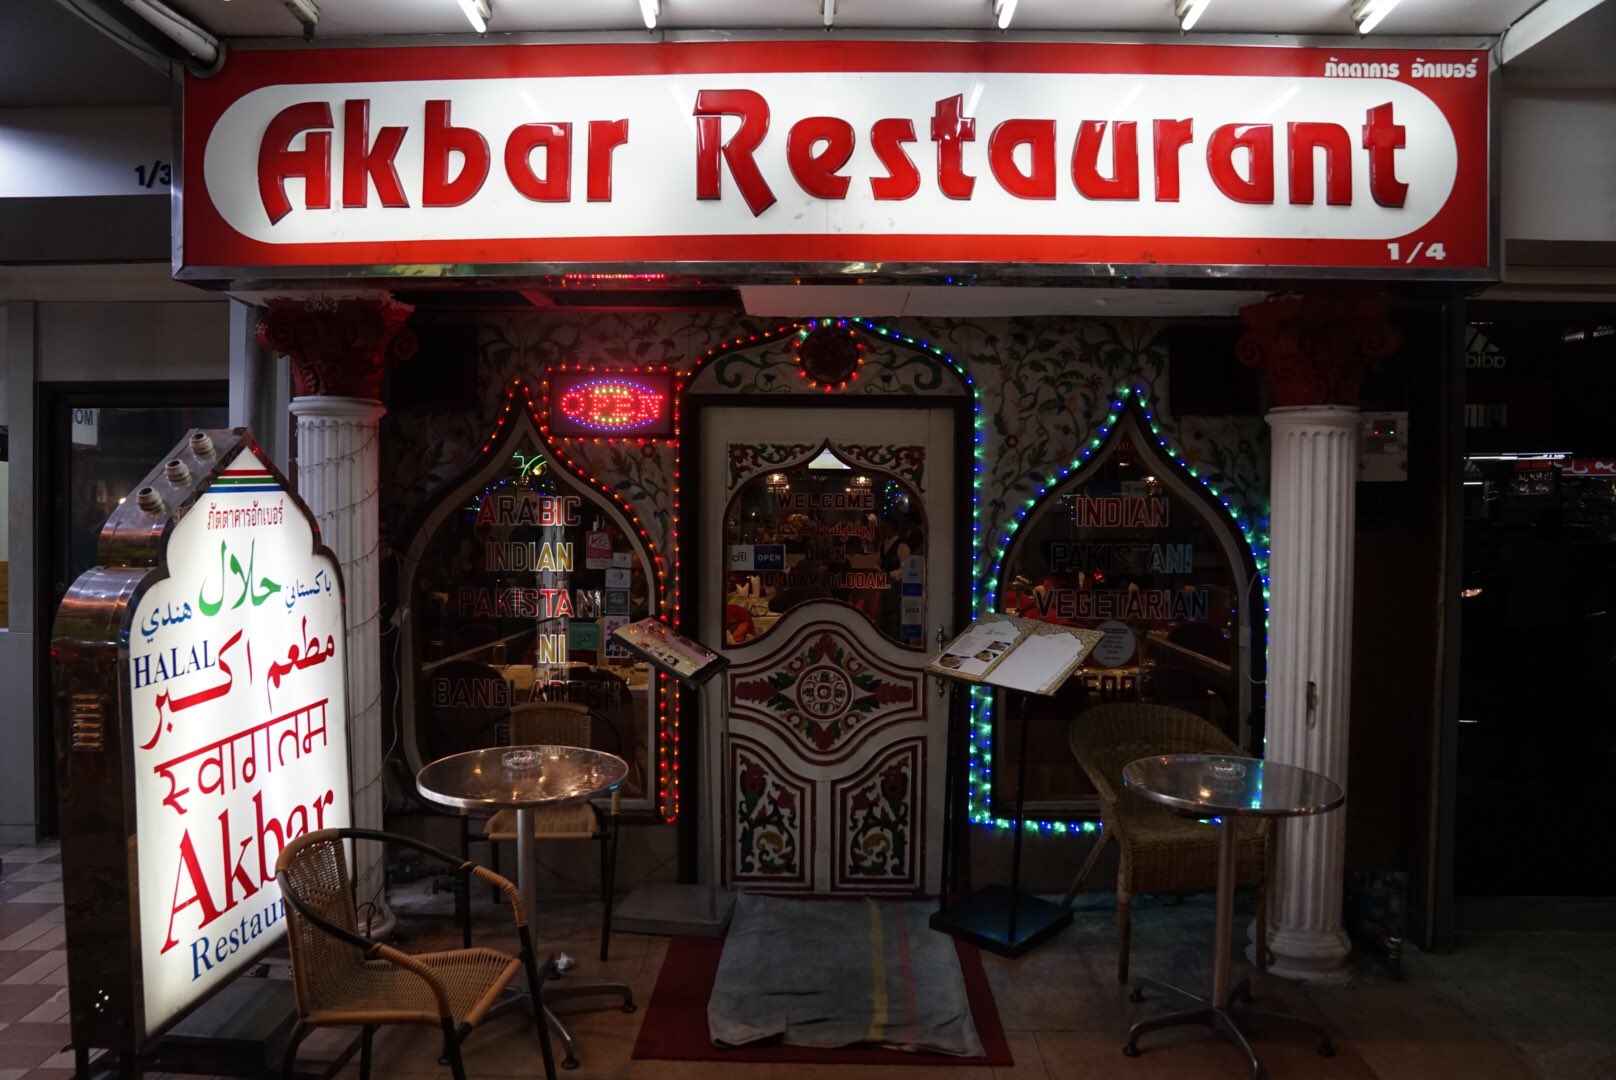 アジアハンター小林 日本のインド ネパール料理店 阿佐ヶ谷書院より2月24日刊行 バンコクに到着 せっかくのバンコクなのでインド料理店へ 1979年創業 スクムビット界隈最古参のakbarでスペシャルタンドーリーターリー オーナーの父は現パキスタン領内